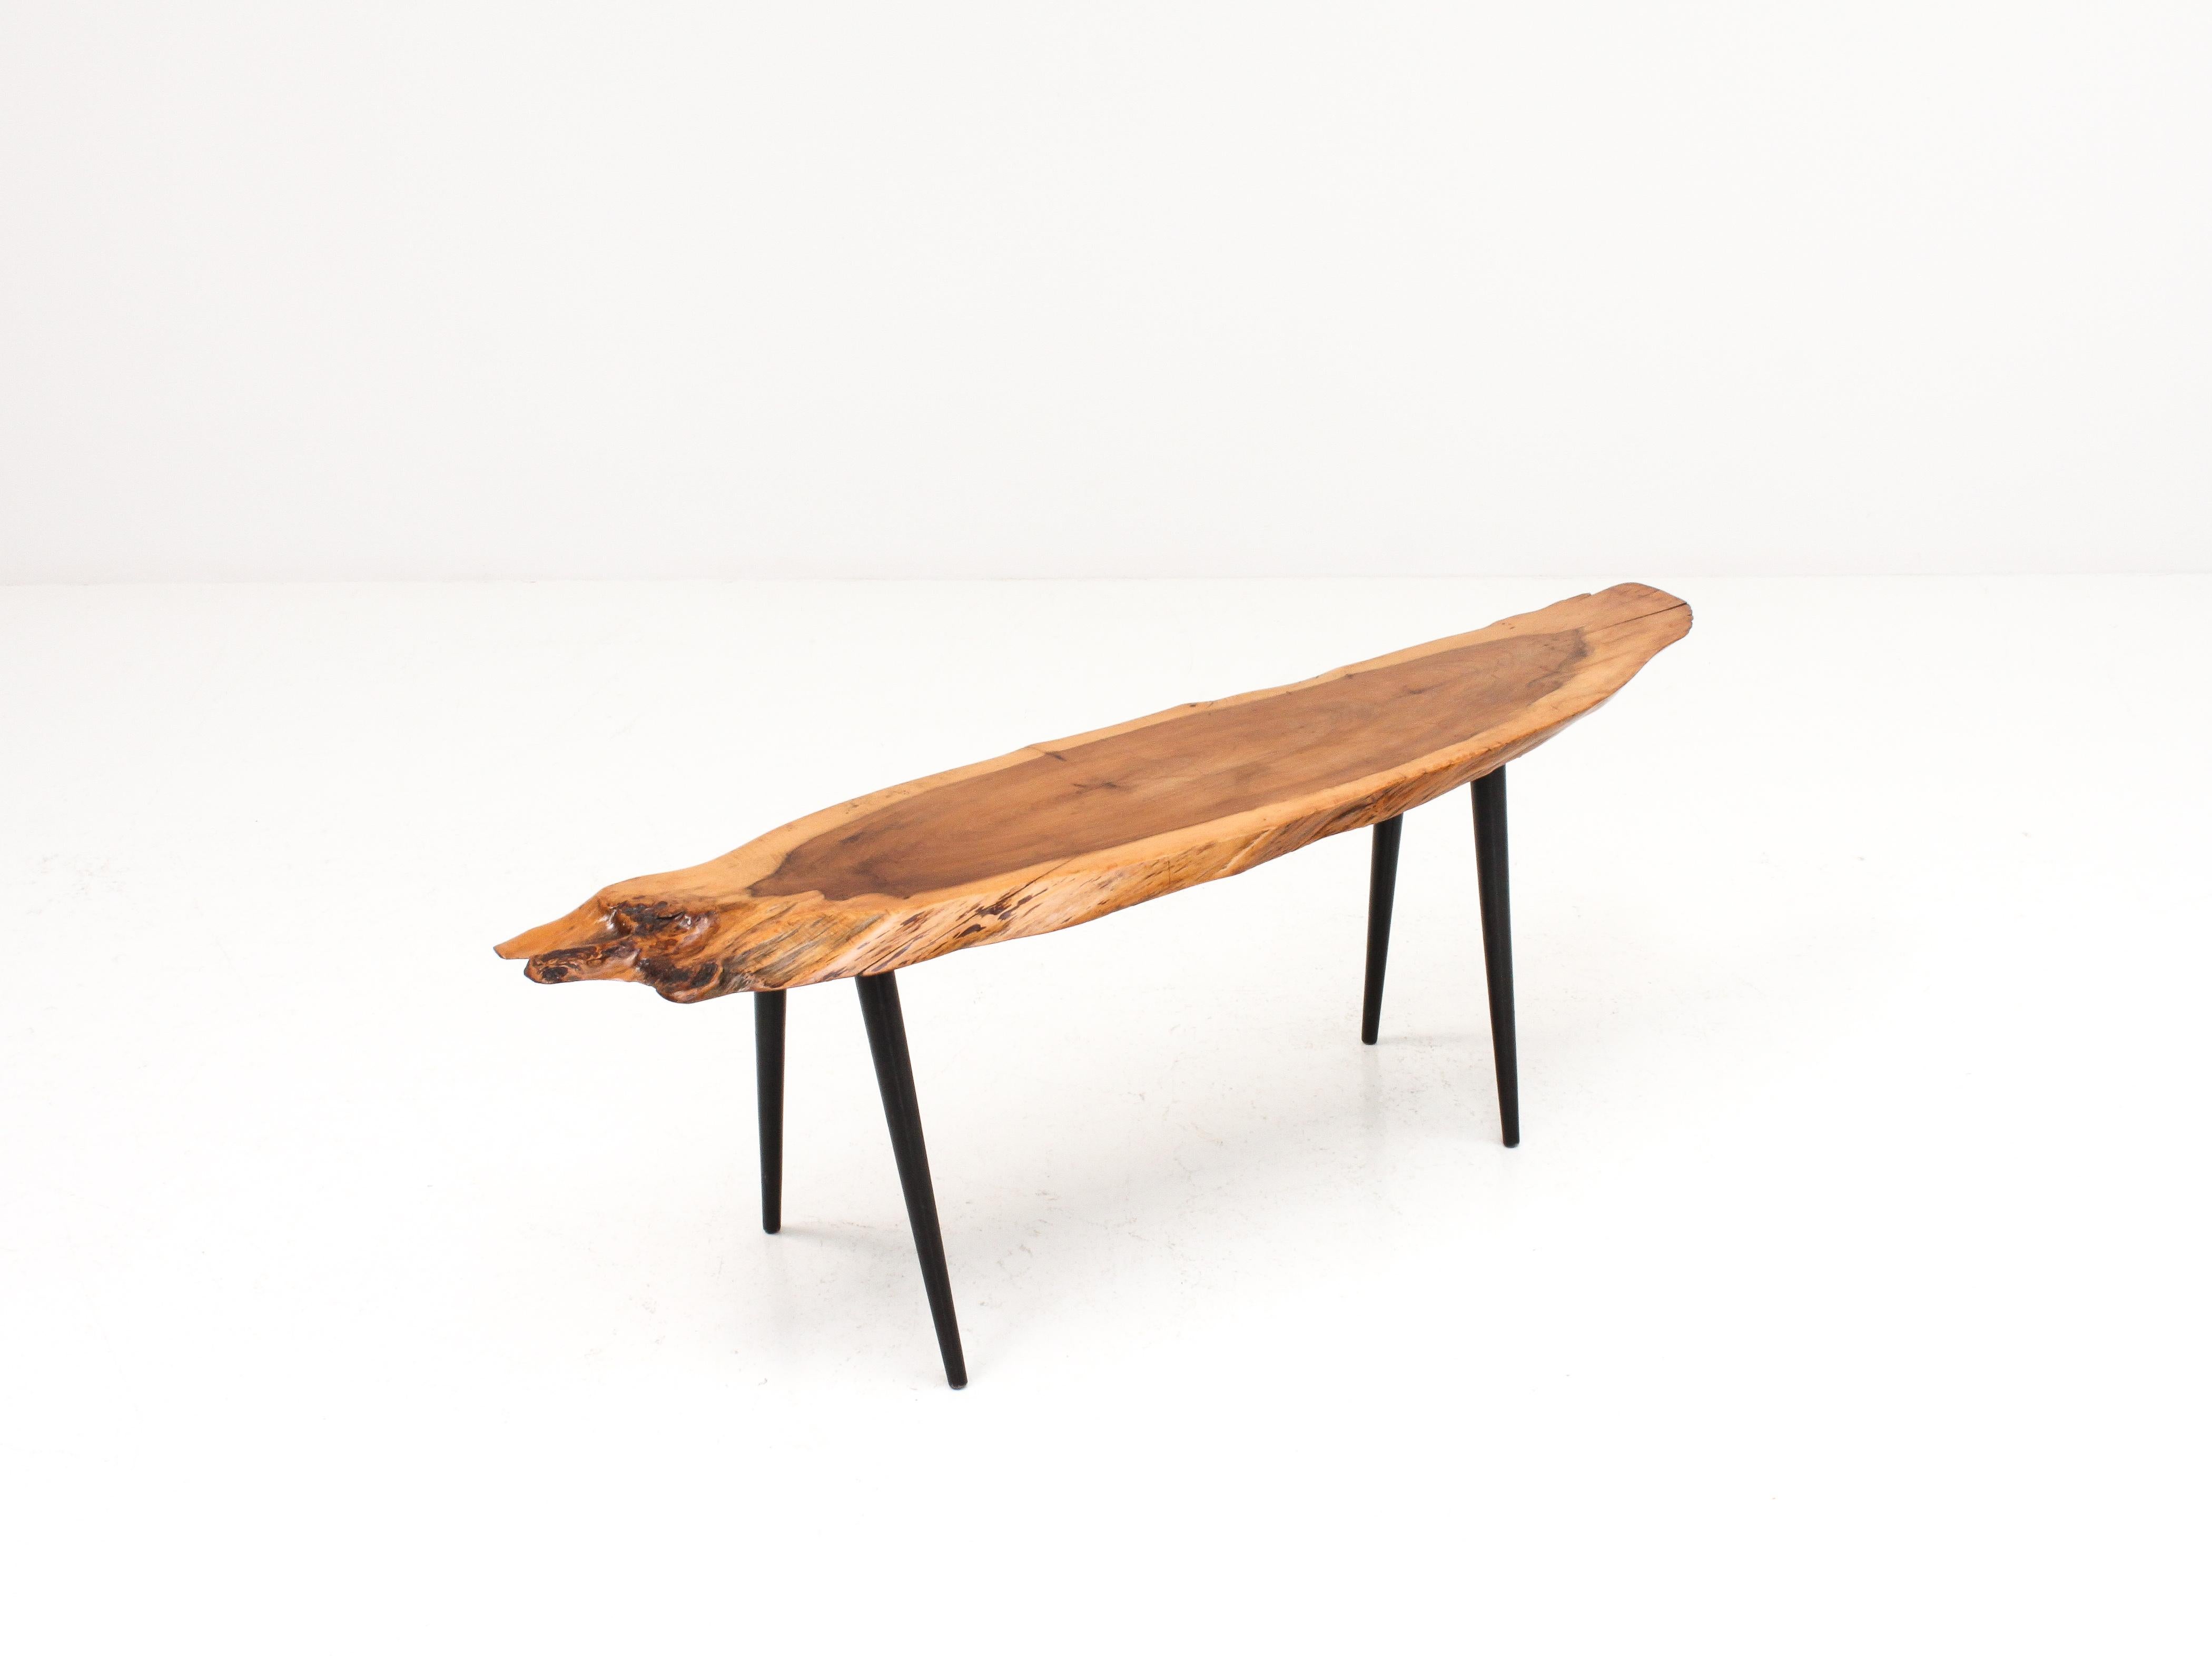 Une table basse à bord vif des années 1960 avec un plateau en bois d'if massif à l'esthétique organique attrayante reposant sur des pieds coniques obliques. 

L'état général est bon, avec des signes d'usure mineurs correspondant à une pièce